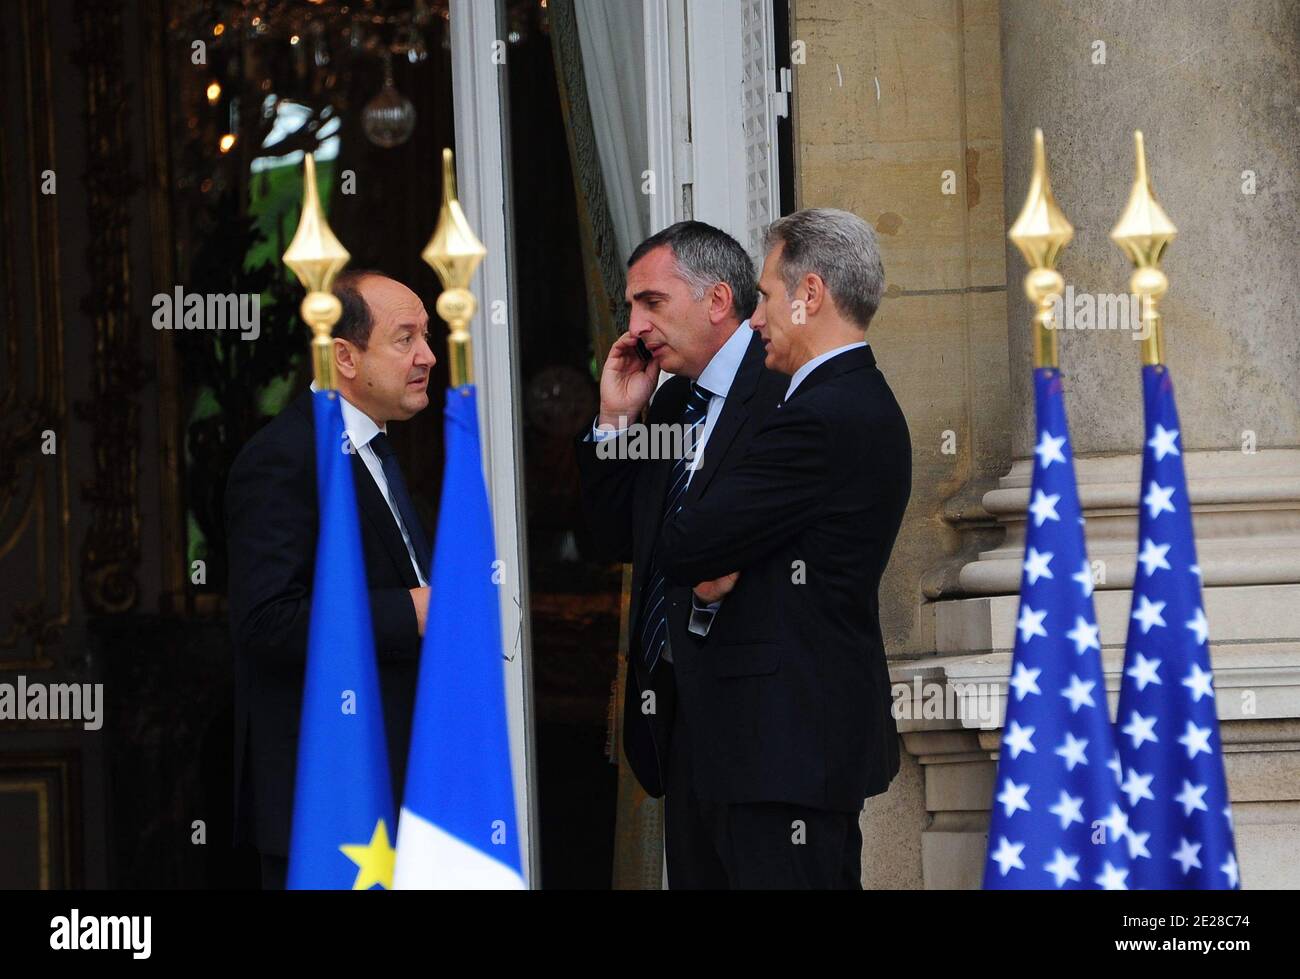 Bernard Squarcini e Michel Besnard sono stati raffigurati durante la celebrazione del 10° anniversario del 11 settembre presso l'Ambasciata degli Stati Uniti a Parigi, in Francia, il 9 settembre 2011. Foto di Mousse/ABACAPRESS.COM Foto Stock